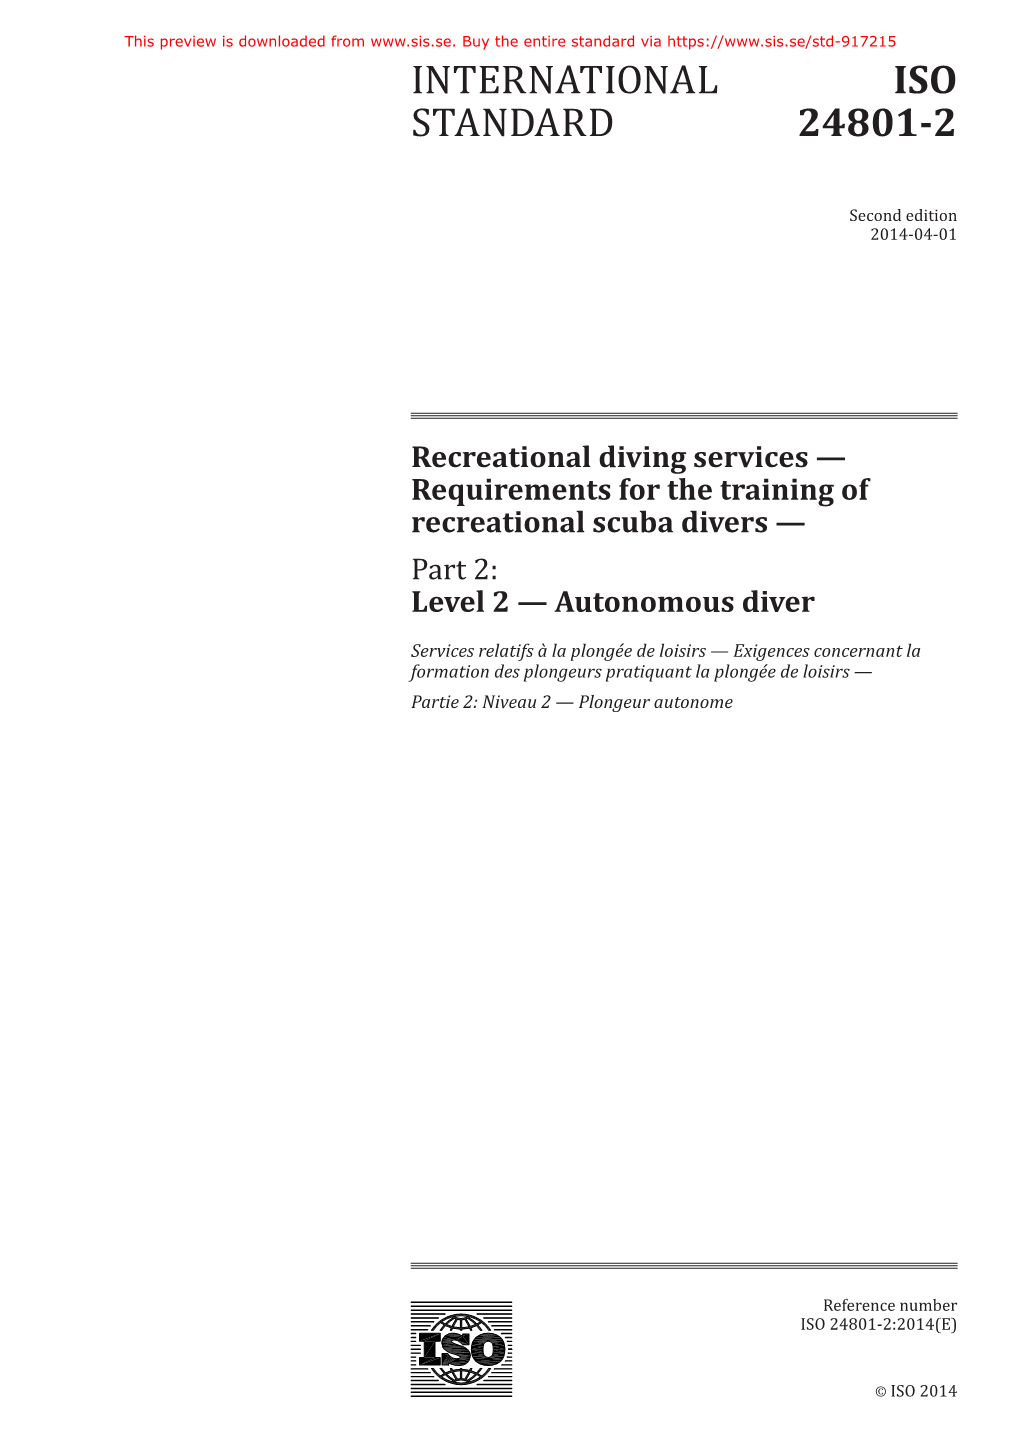 International Standard Iso 24801-2:2014(E)